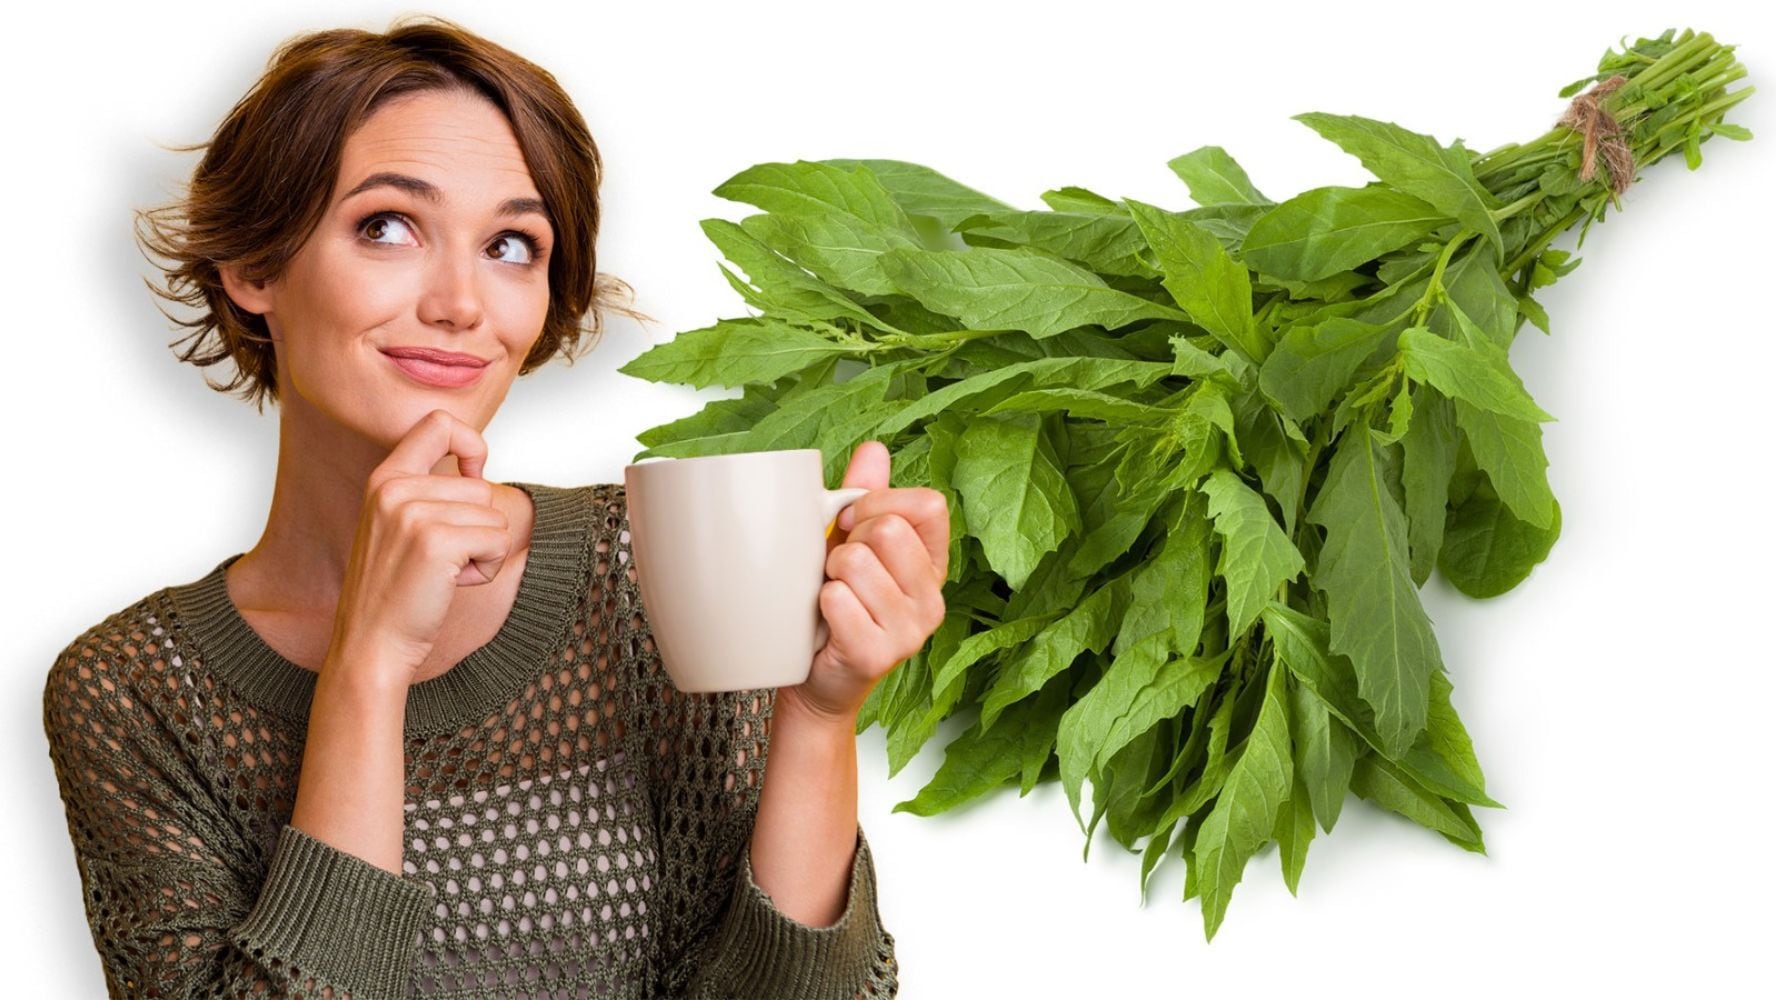 El té de epazote es un remedio casero que se asocia con una mejoría en la salud del estómago. (Foto: Shutterstock)